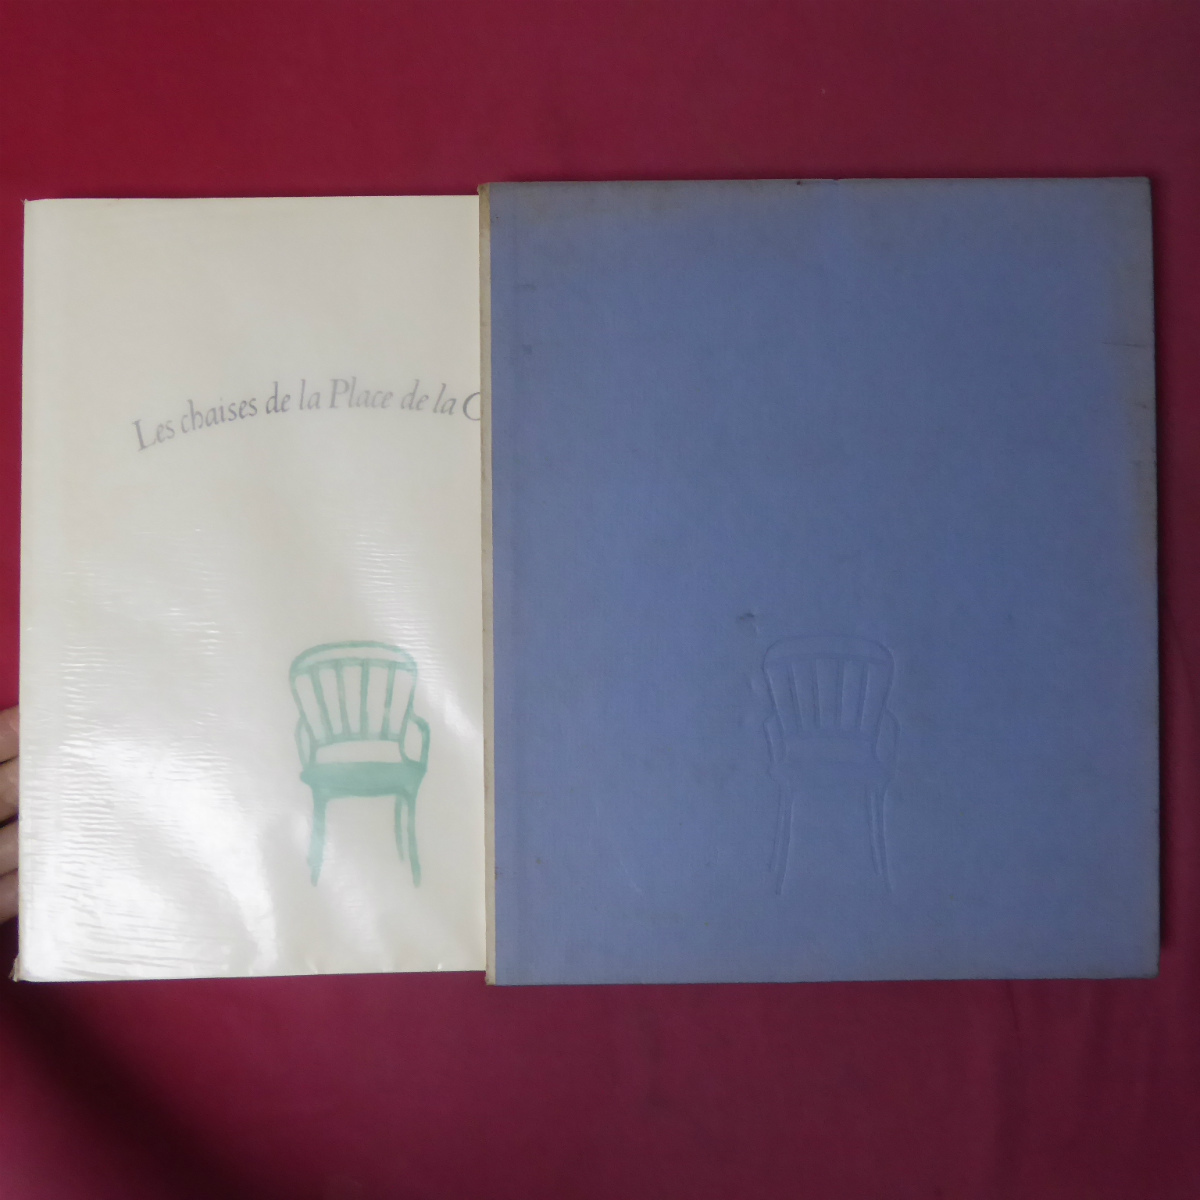 बड़े एस [काई हिगाशियामा - प्लेस डे ला कॉनकॉर्ड में कुर्सियाँ / 1976, क्युरयूडो] @5, चित्रकारी, कला पुस्तक, संग्रह, कला पुस्तक